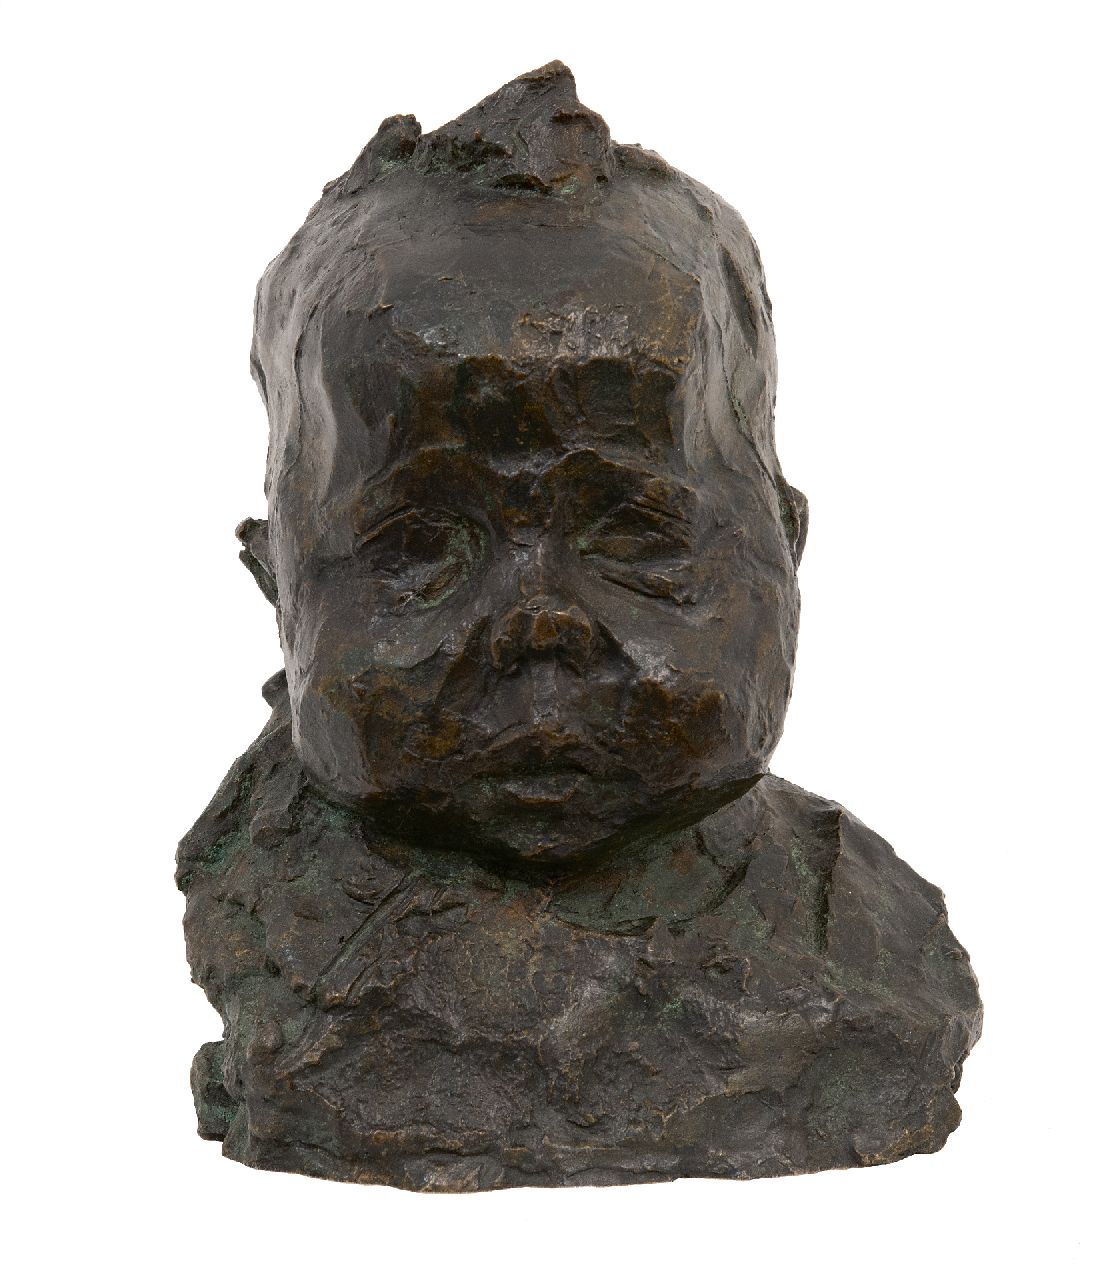 Zijl L.  | Lambertus Zijl | Beelden en objecten te koop aangeboden | Babykopje (Nita Zijl), brons 21,0 cm, gesigneerd op achterzijde met initialen en gedateerd juni '93